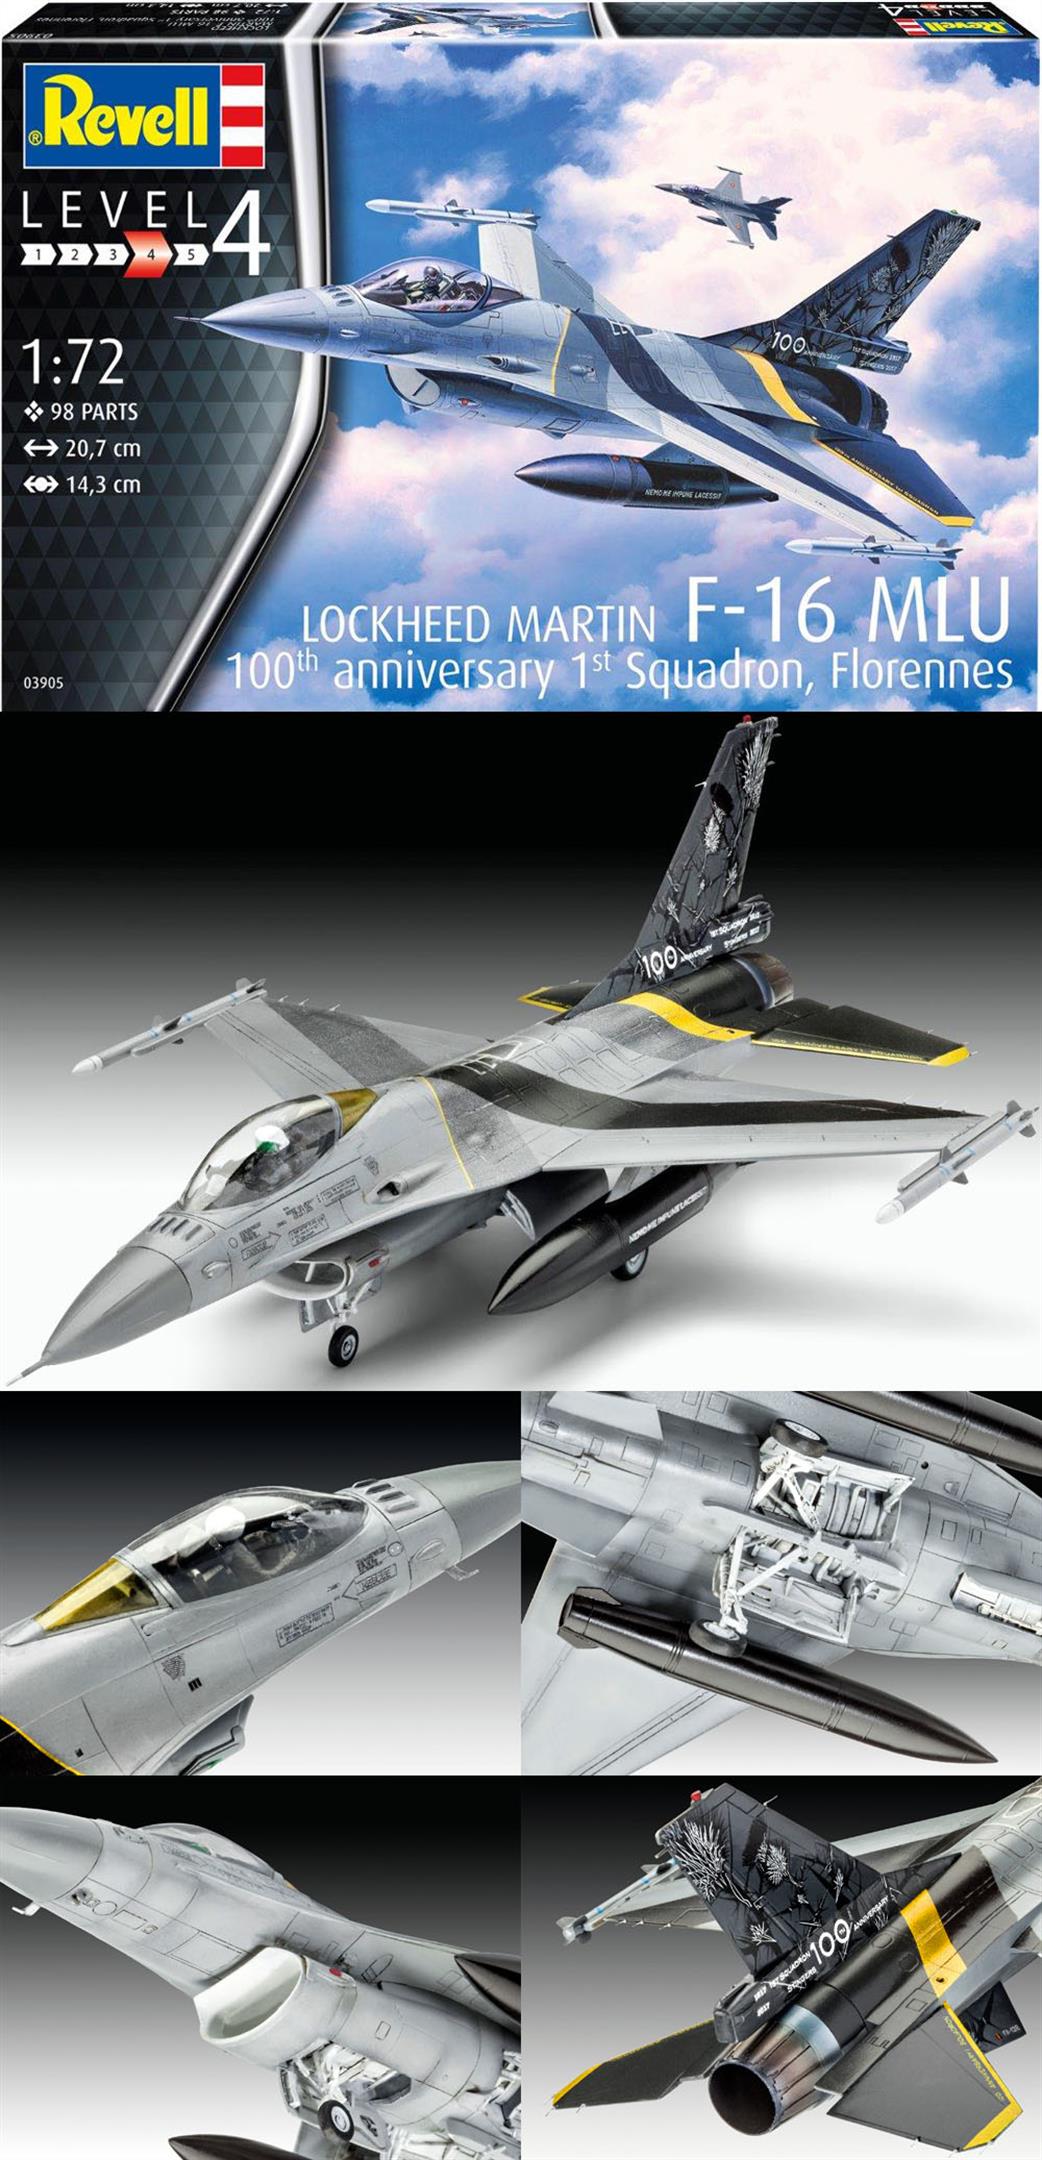 Revell 1/72 03905 F-16 Mlu 100th Anniversary Kit